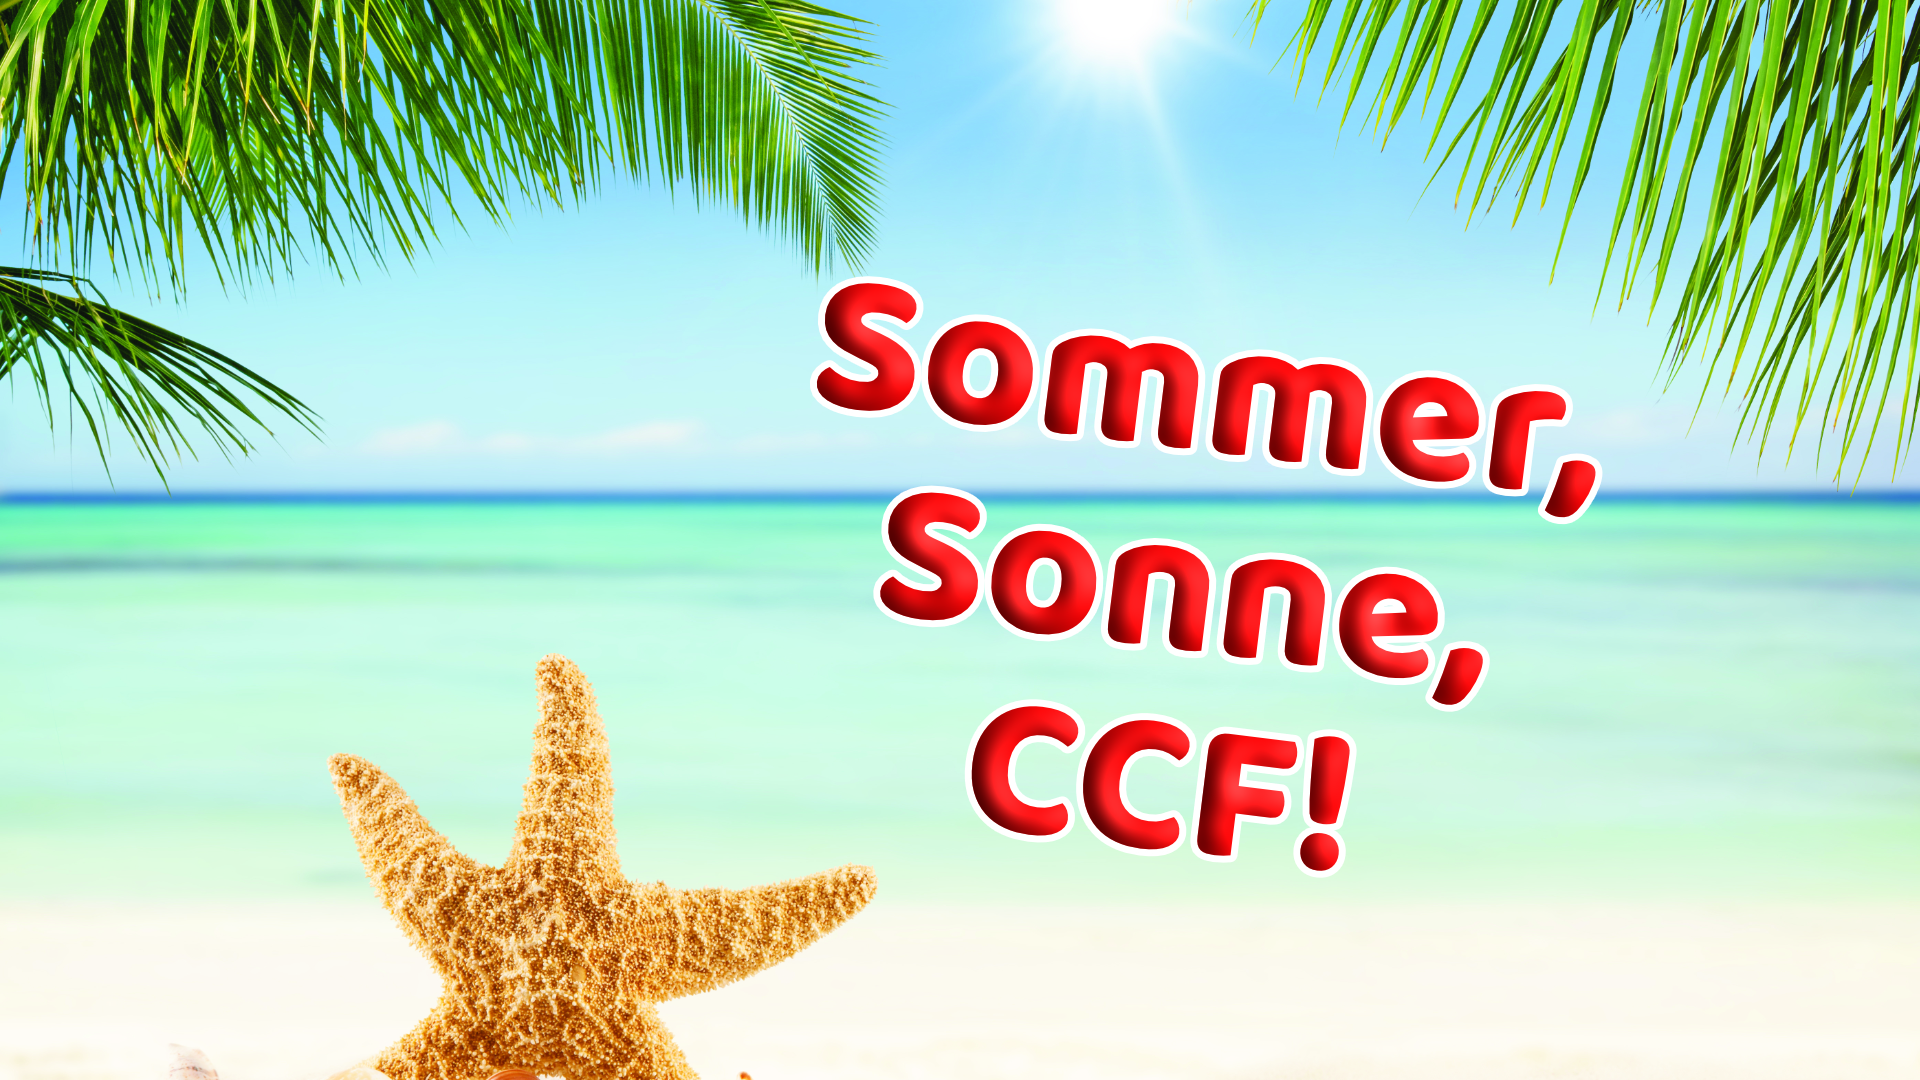 Sommer, Sonne, CCF!